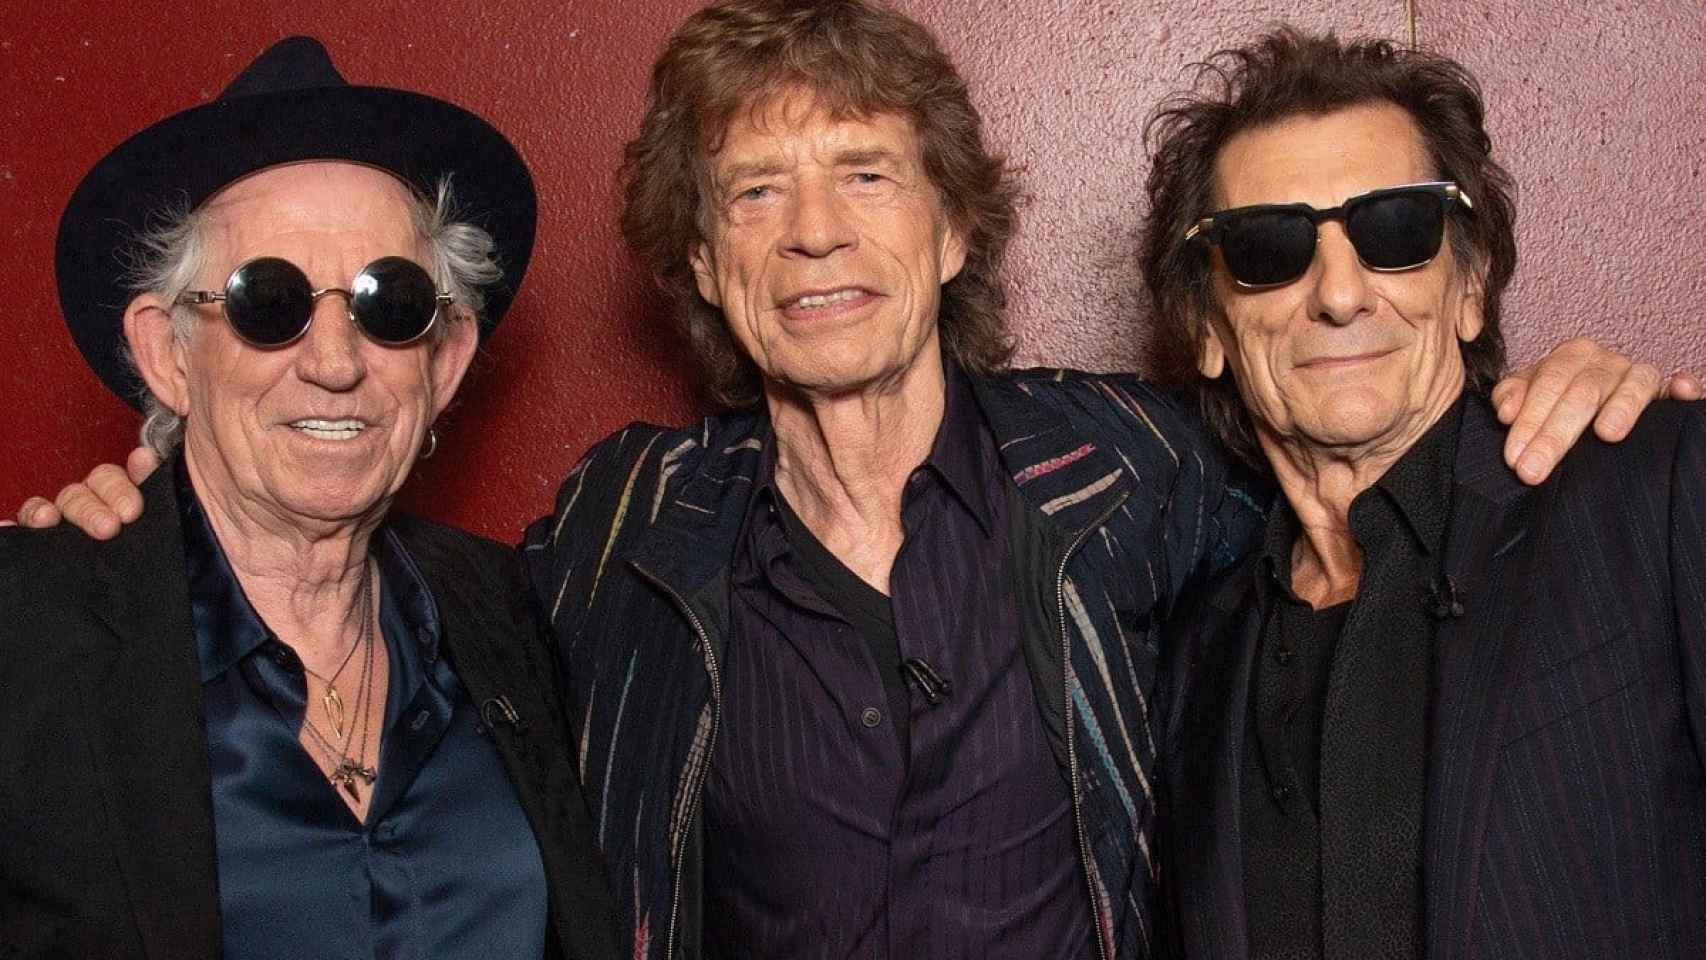 Foto promocional de los Rolling Stones